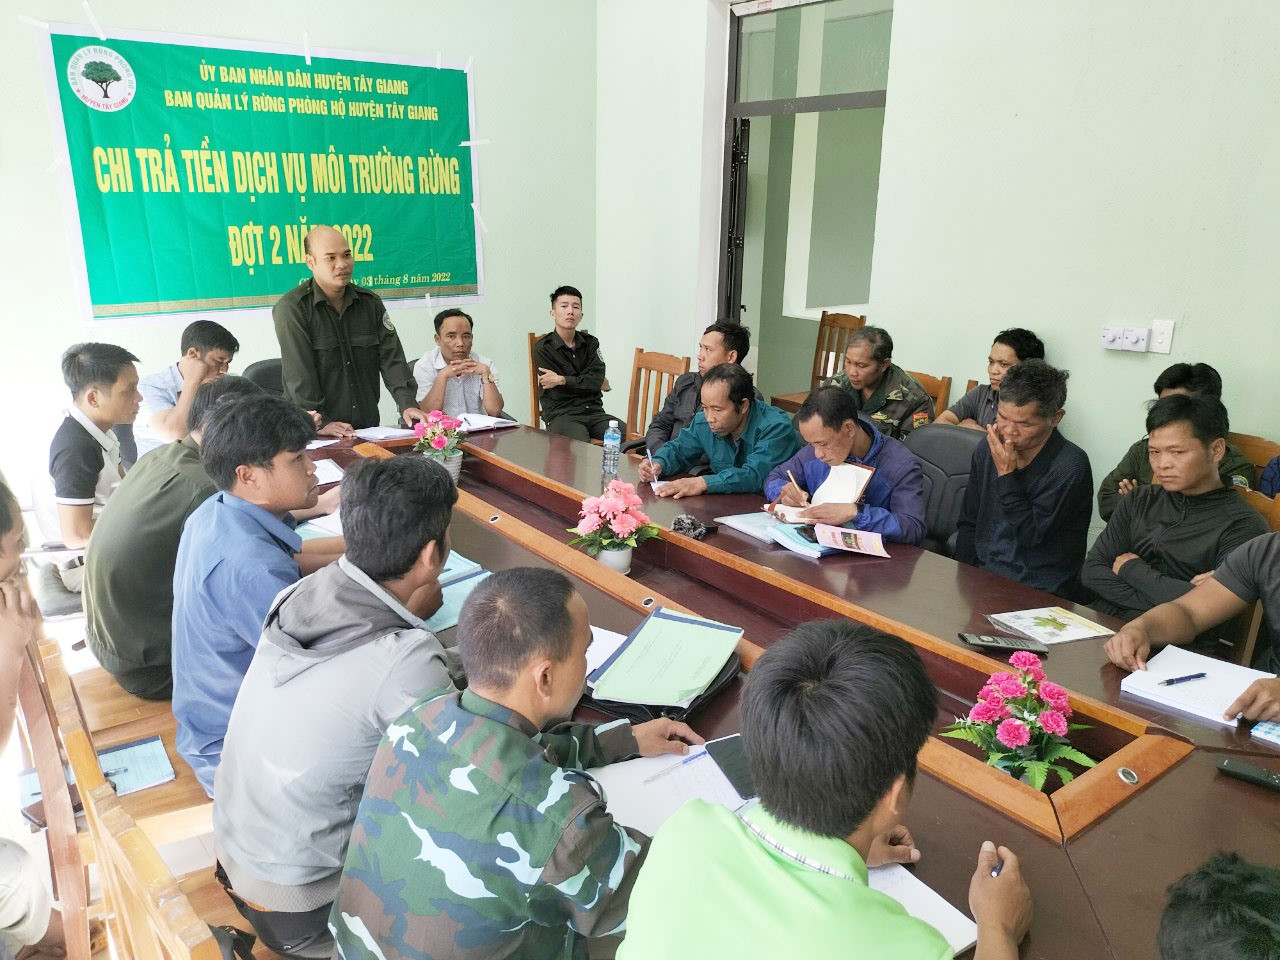 Chi trả dịch vụ môi trường rừng cho các tổ quản lý bảo vệ rừng tại Tây Giang. Ảnh: T.C